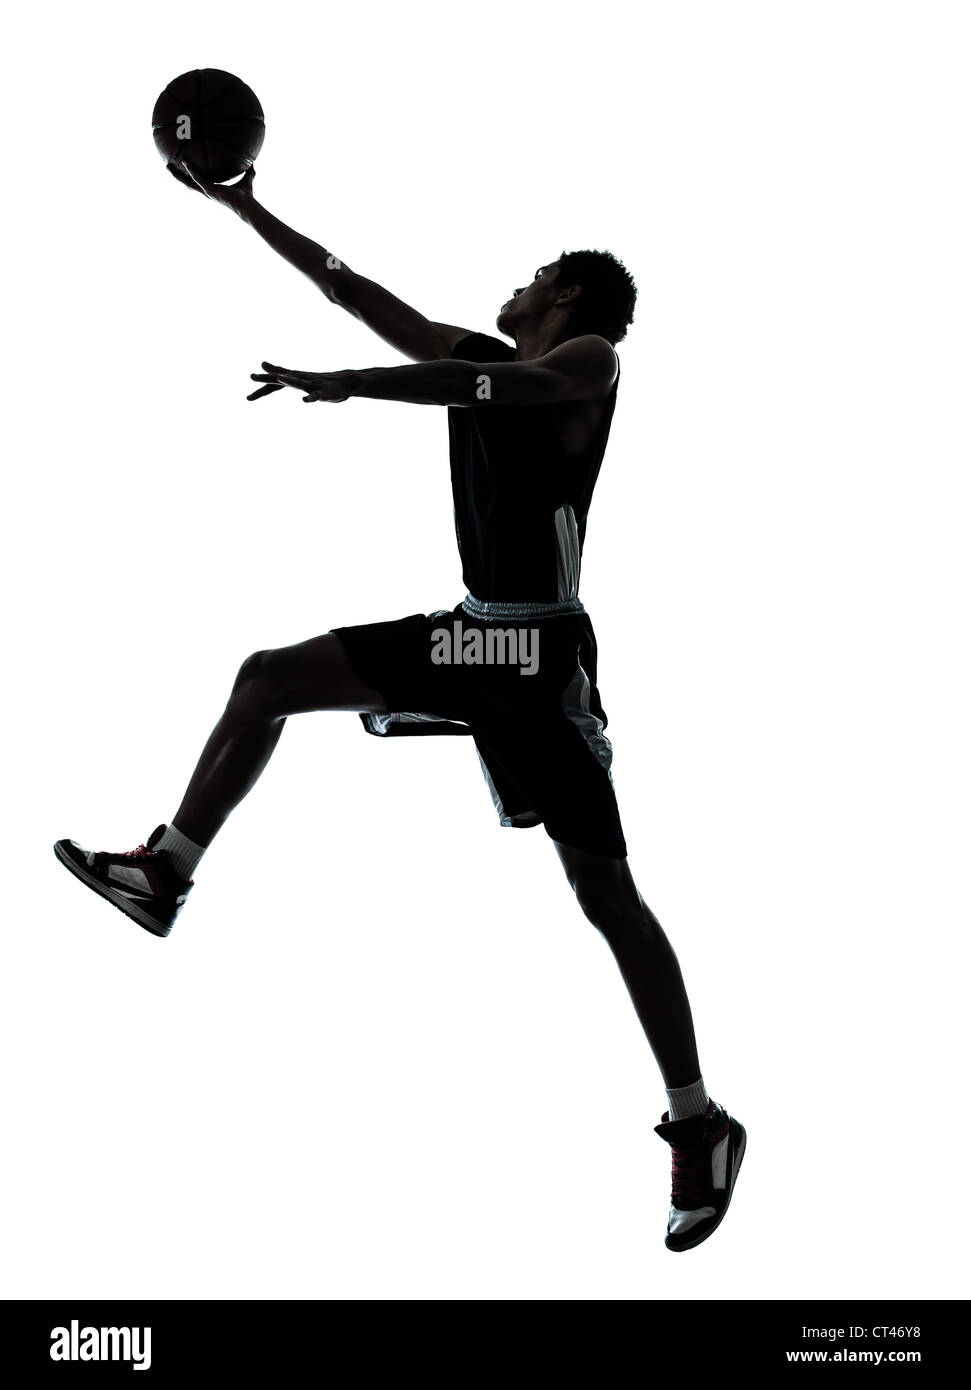 Un jeune homme basket-ball player silhouette en studio isolé sur fond blanc Banque D'Images